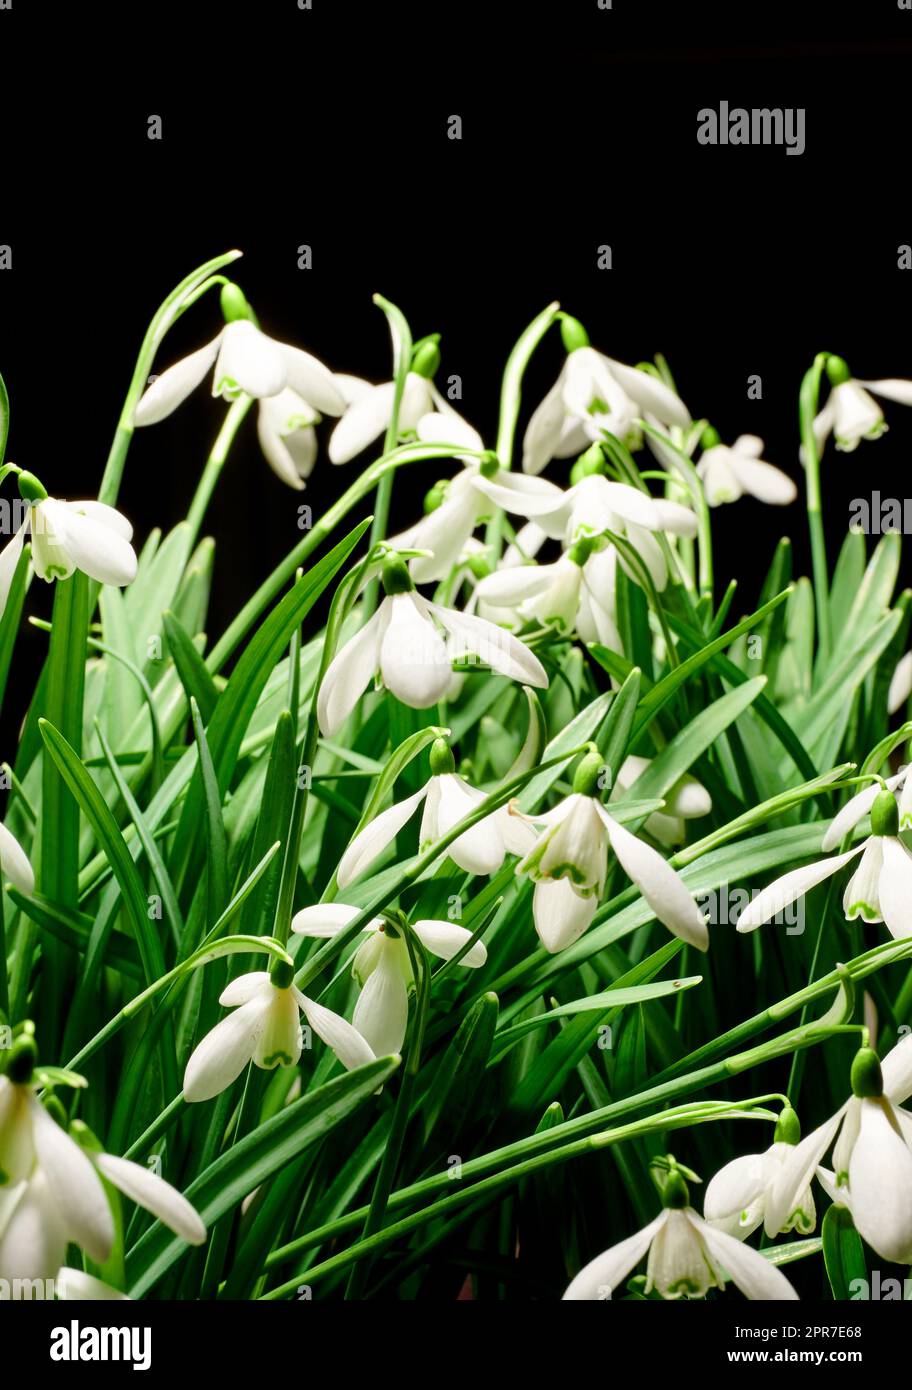 Primo piano di un mazzo di fiori bianchi comuni a gocce di neve che crescono in studio isolati su uno sfondo nero. Galanthus nivalis in erba, fioritura, fioritura e fioritura con uno spazio di copia scuro Foto Stock